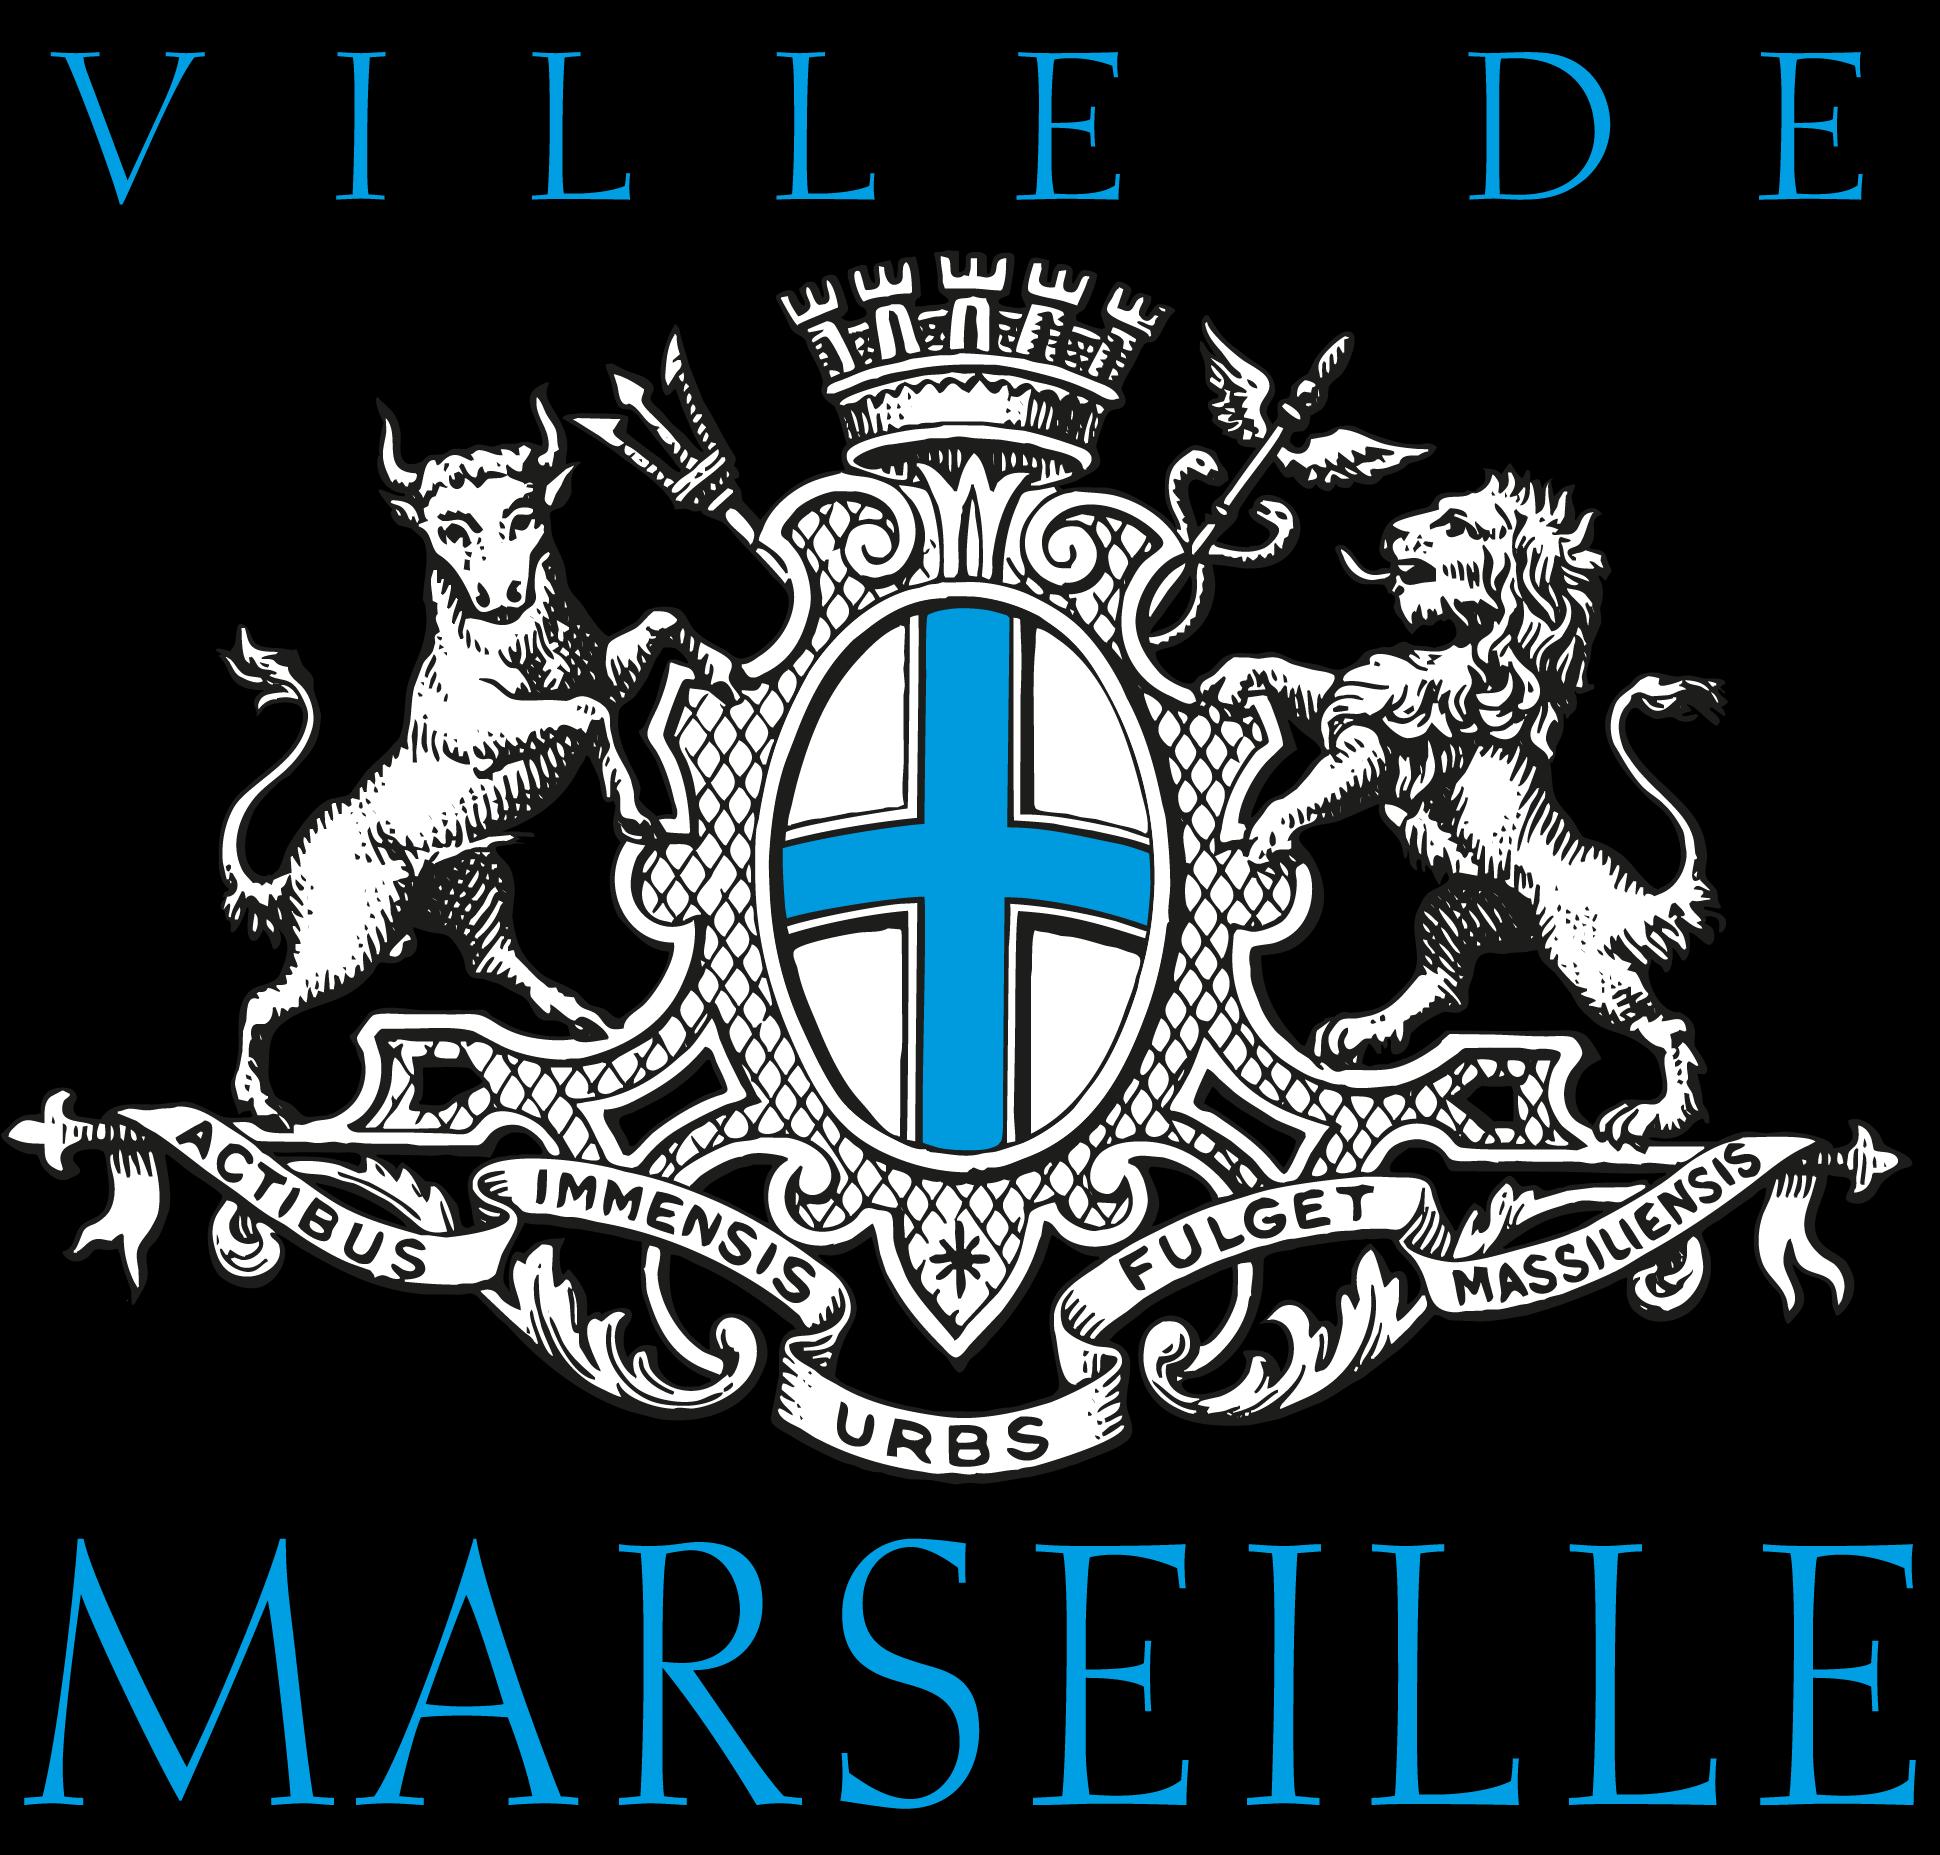 Crèche Plan D'aou Marseille